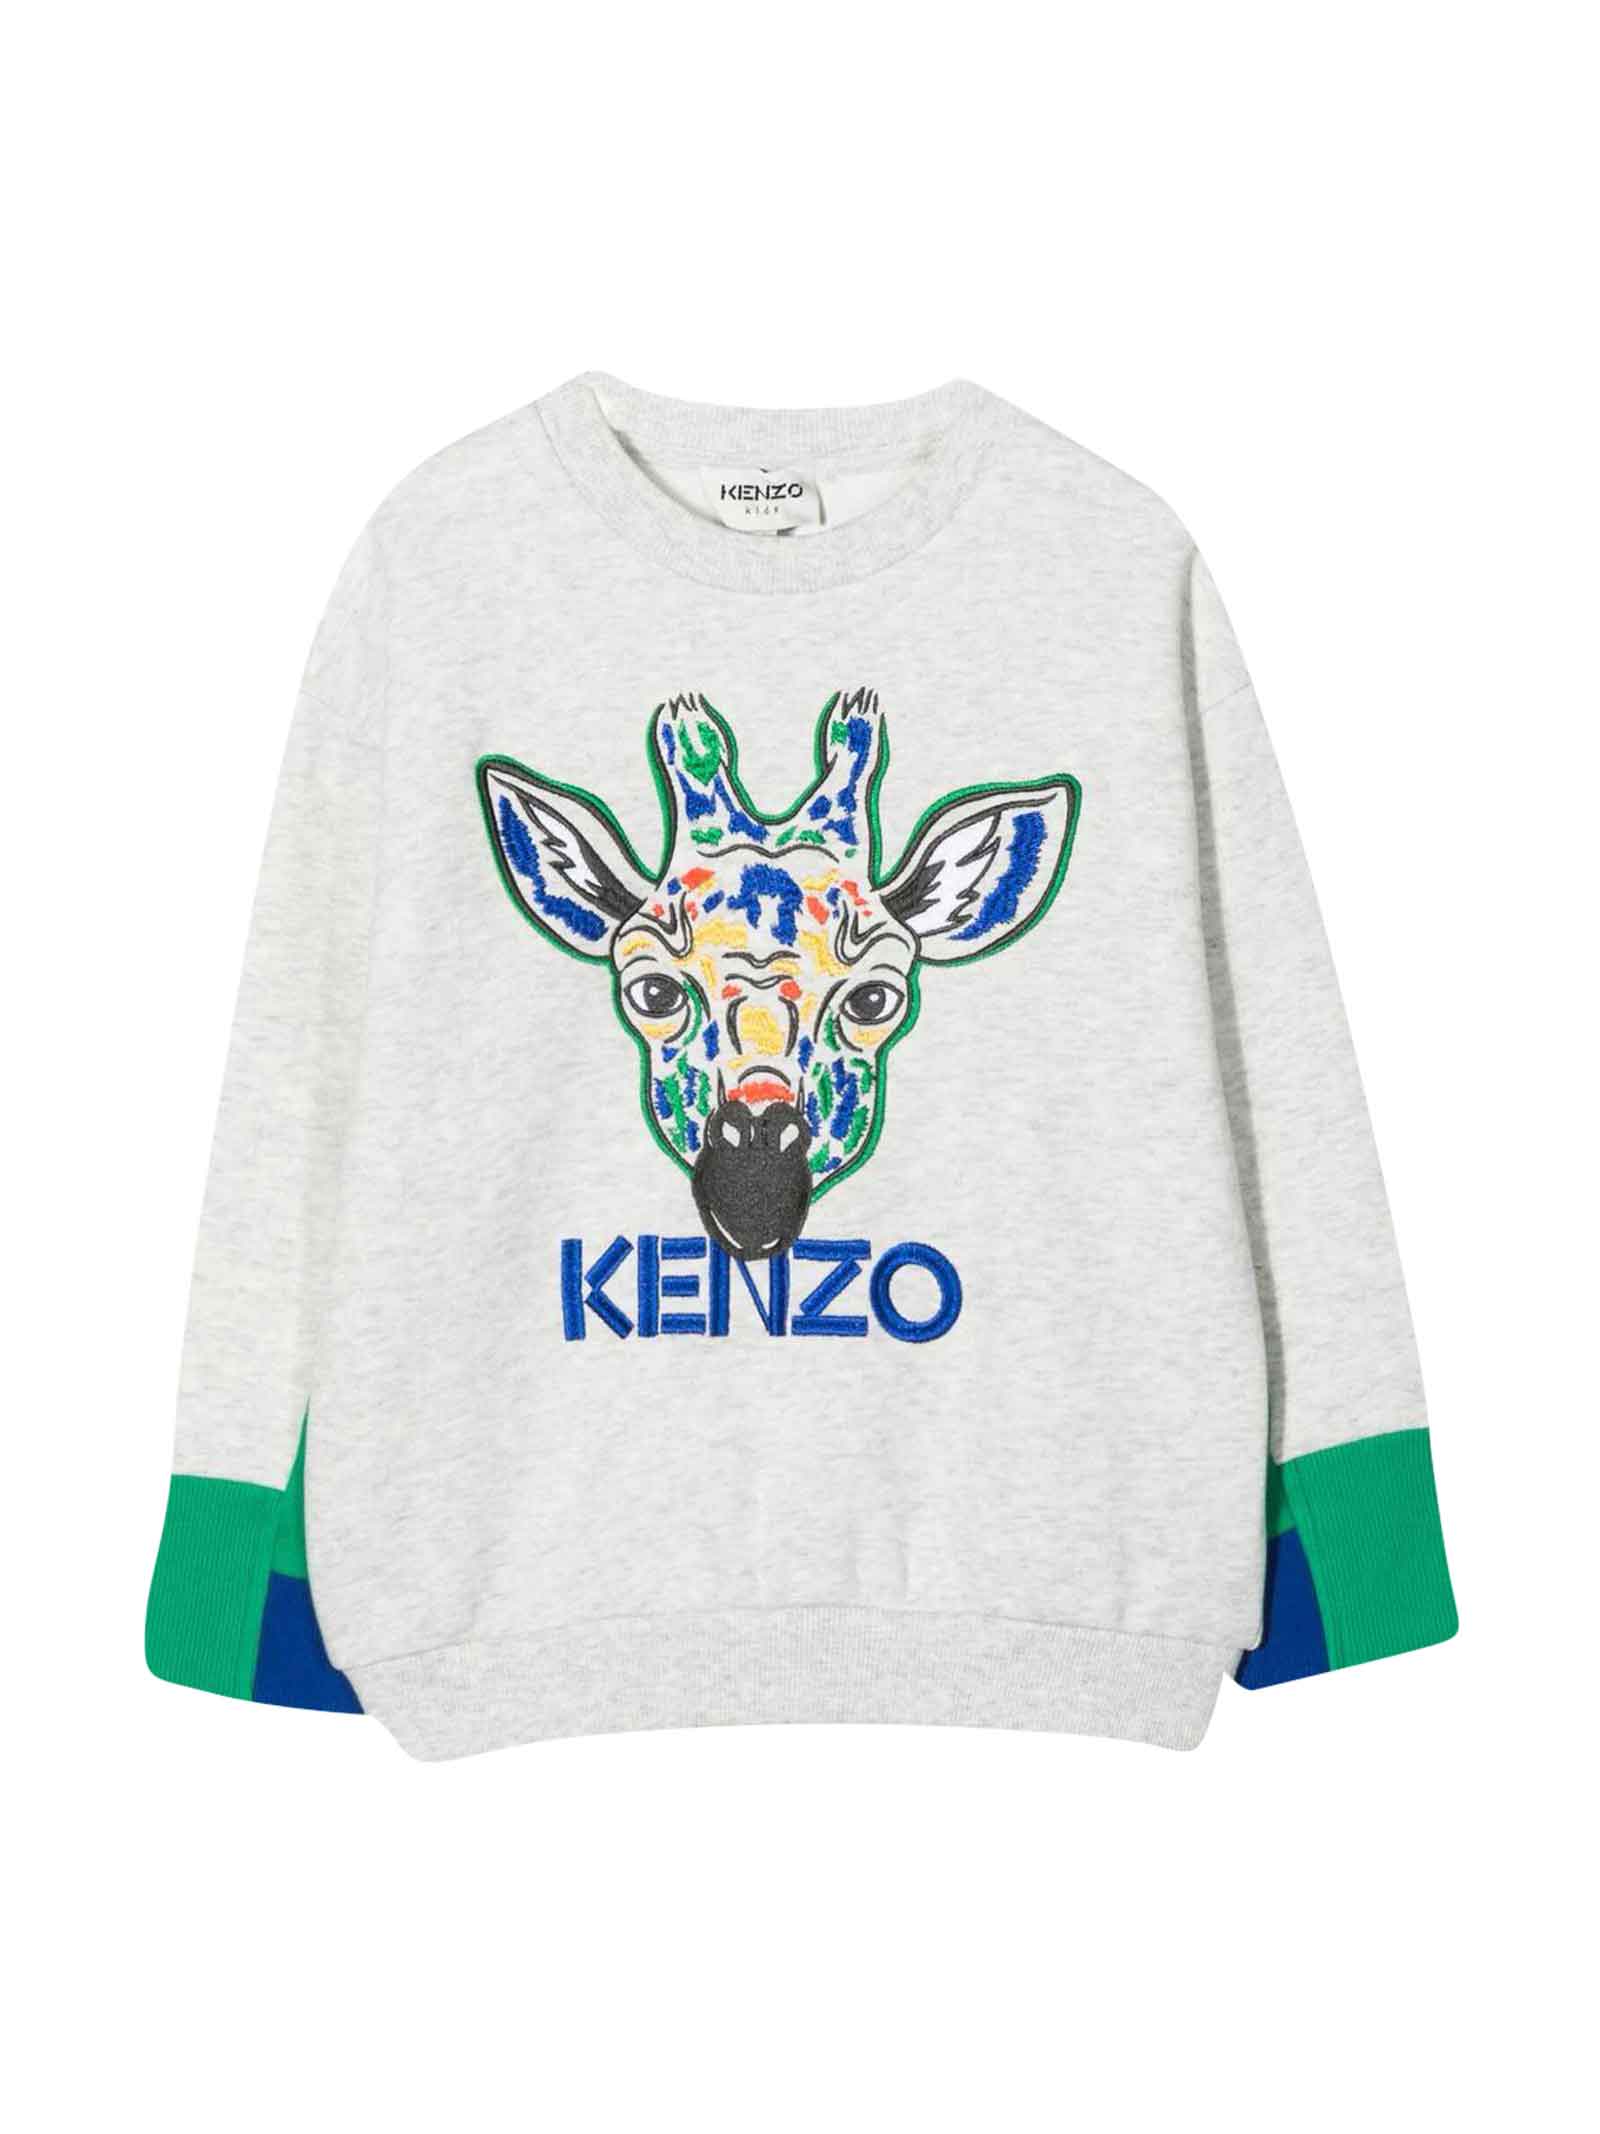 Kenzo Kids Gray Sweatshirt Teen Unisex